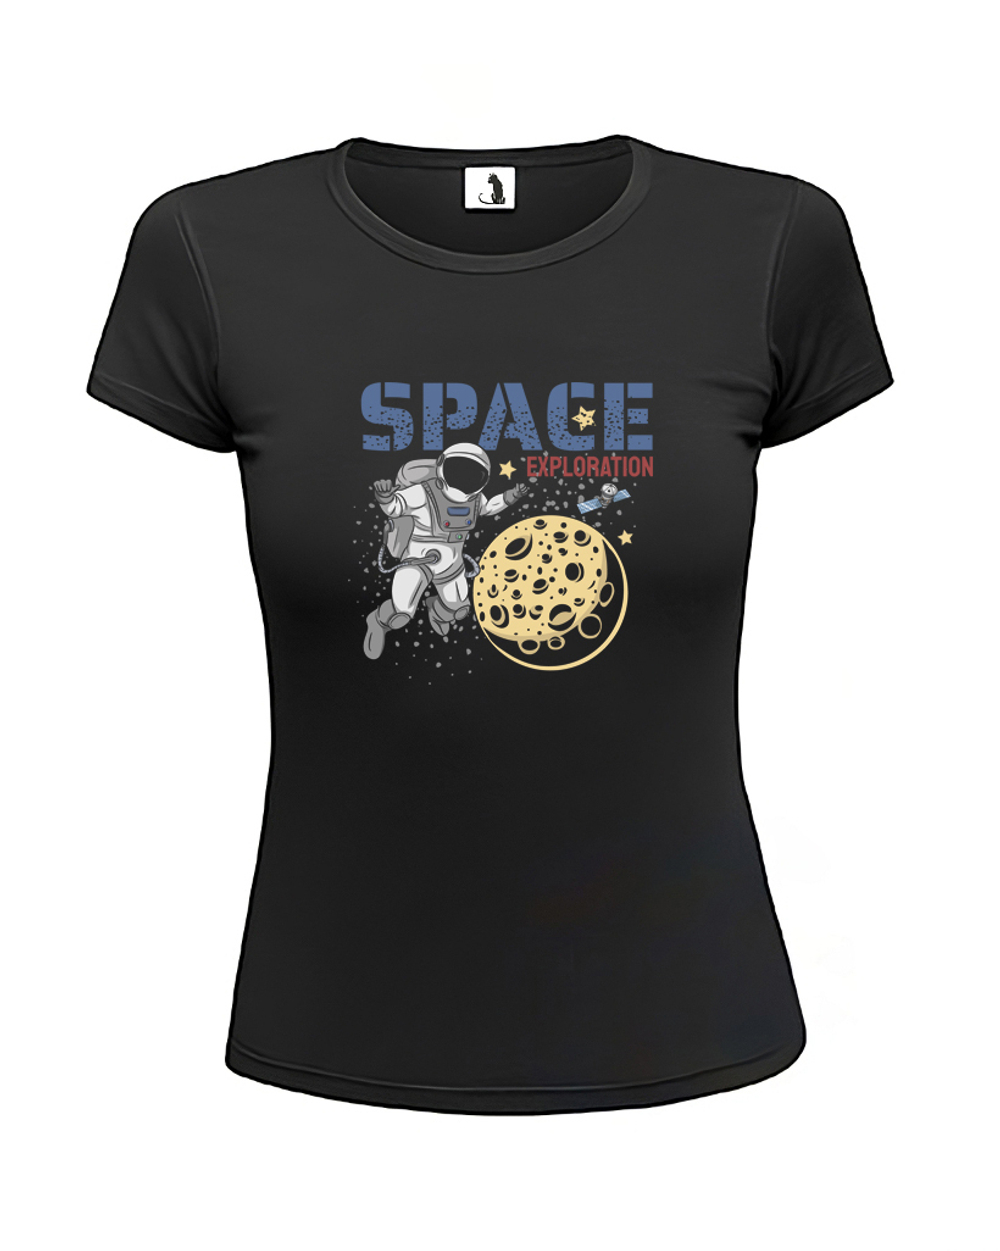 Футболка Space exploration женская приталенная черная